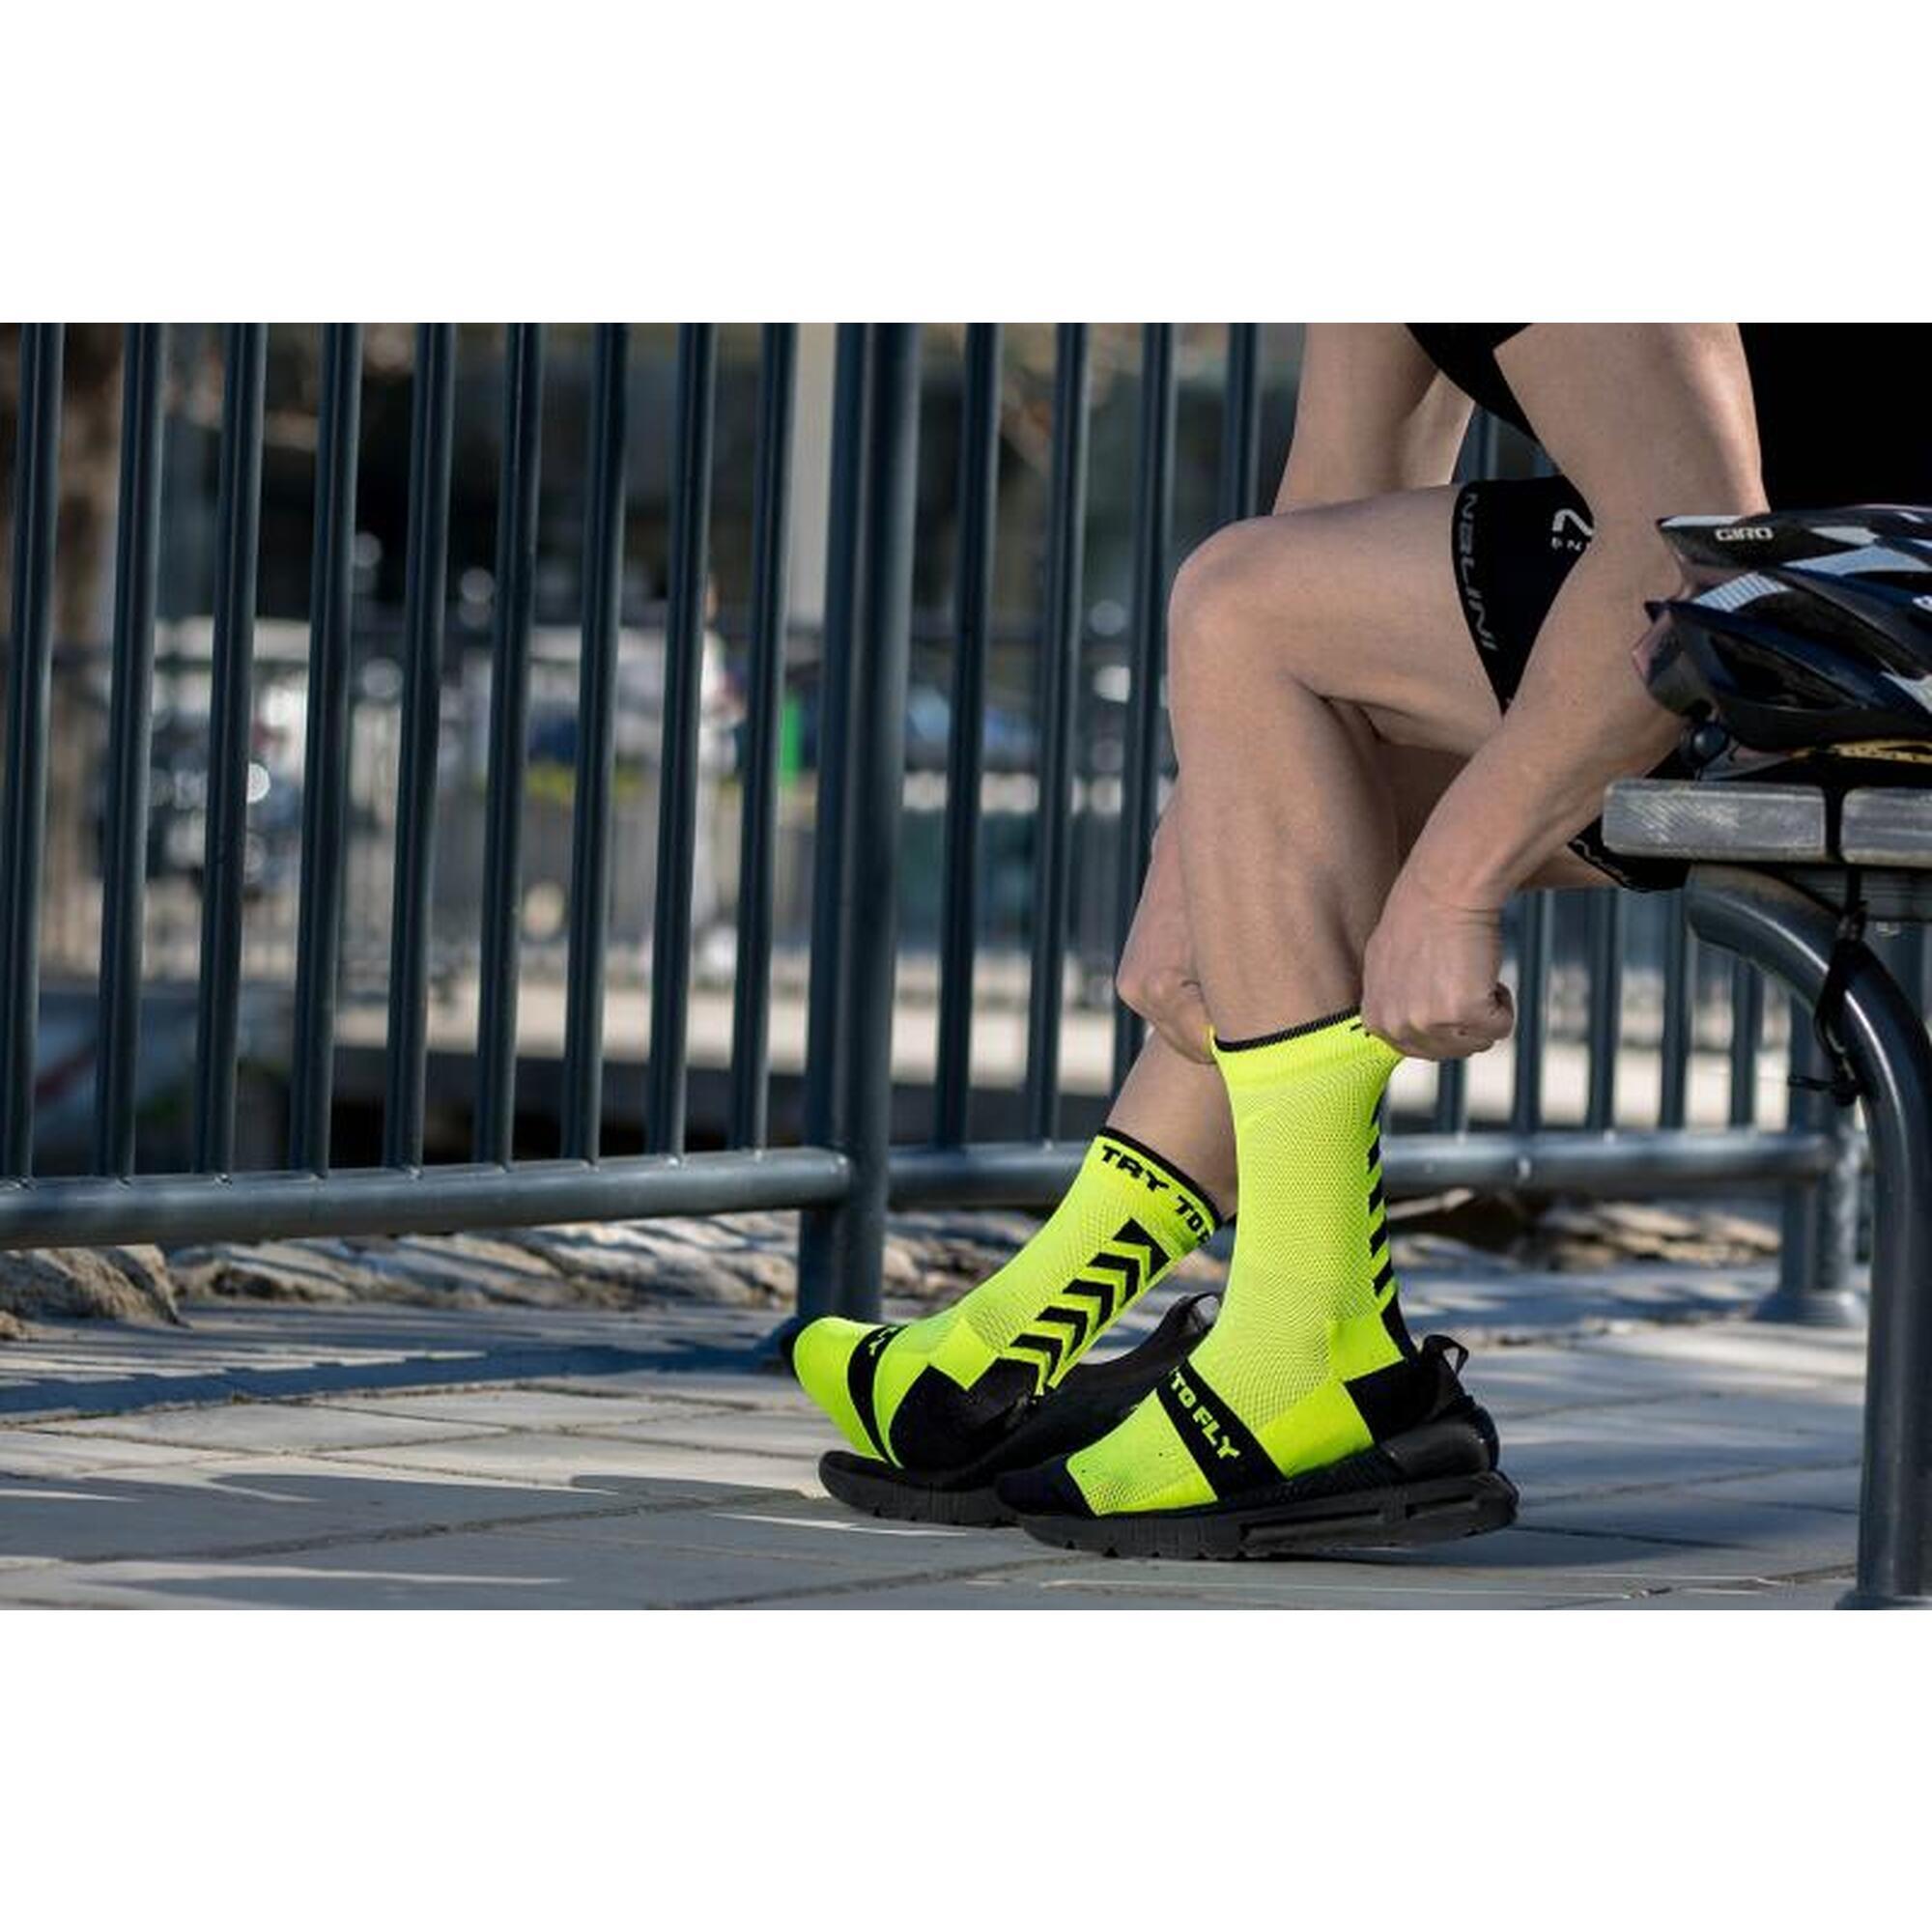 Neonsárga színű kerékpáros zokni